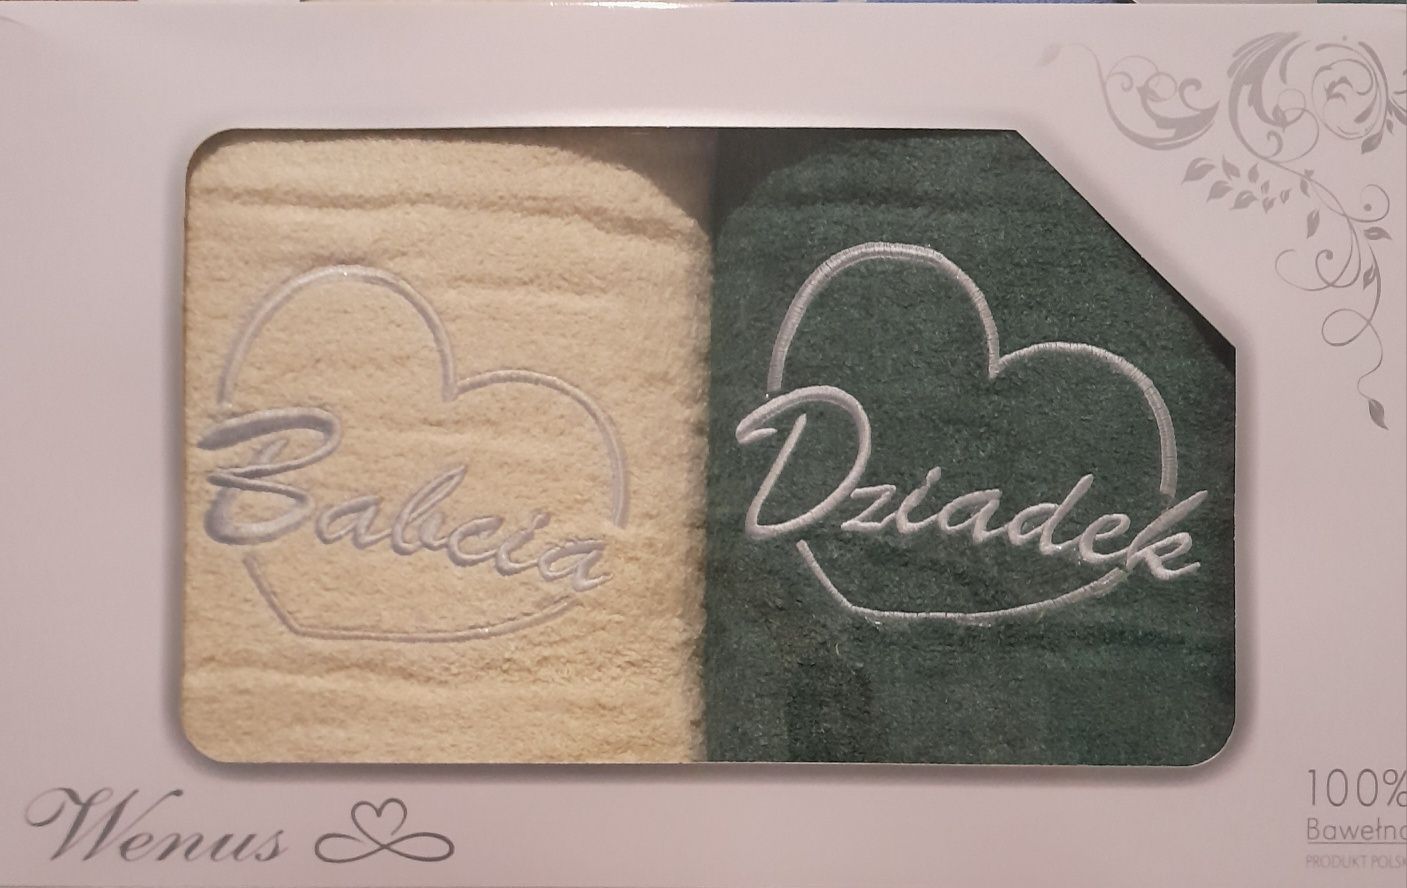 Komplet ręczników w dwóch kolorach to świetna propozycja!

Wzory kolor